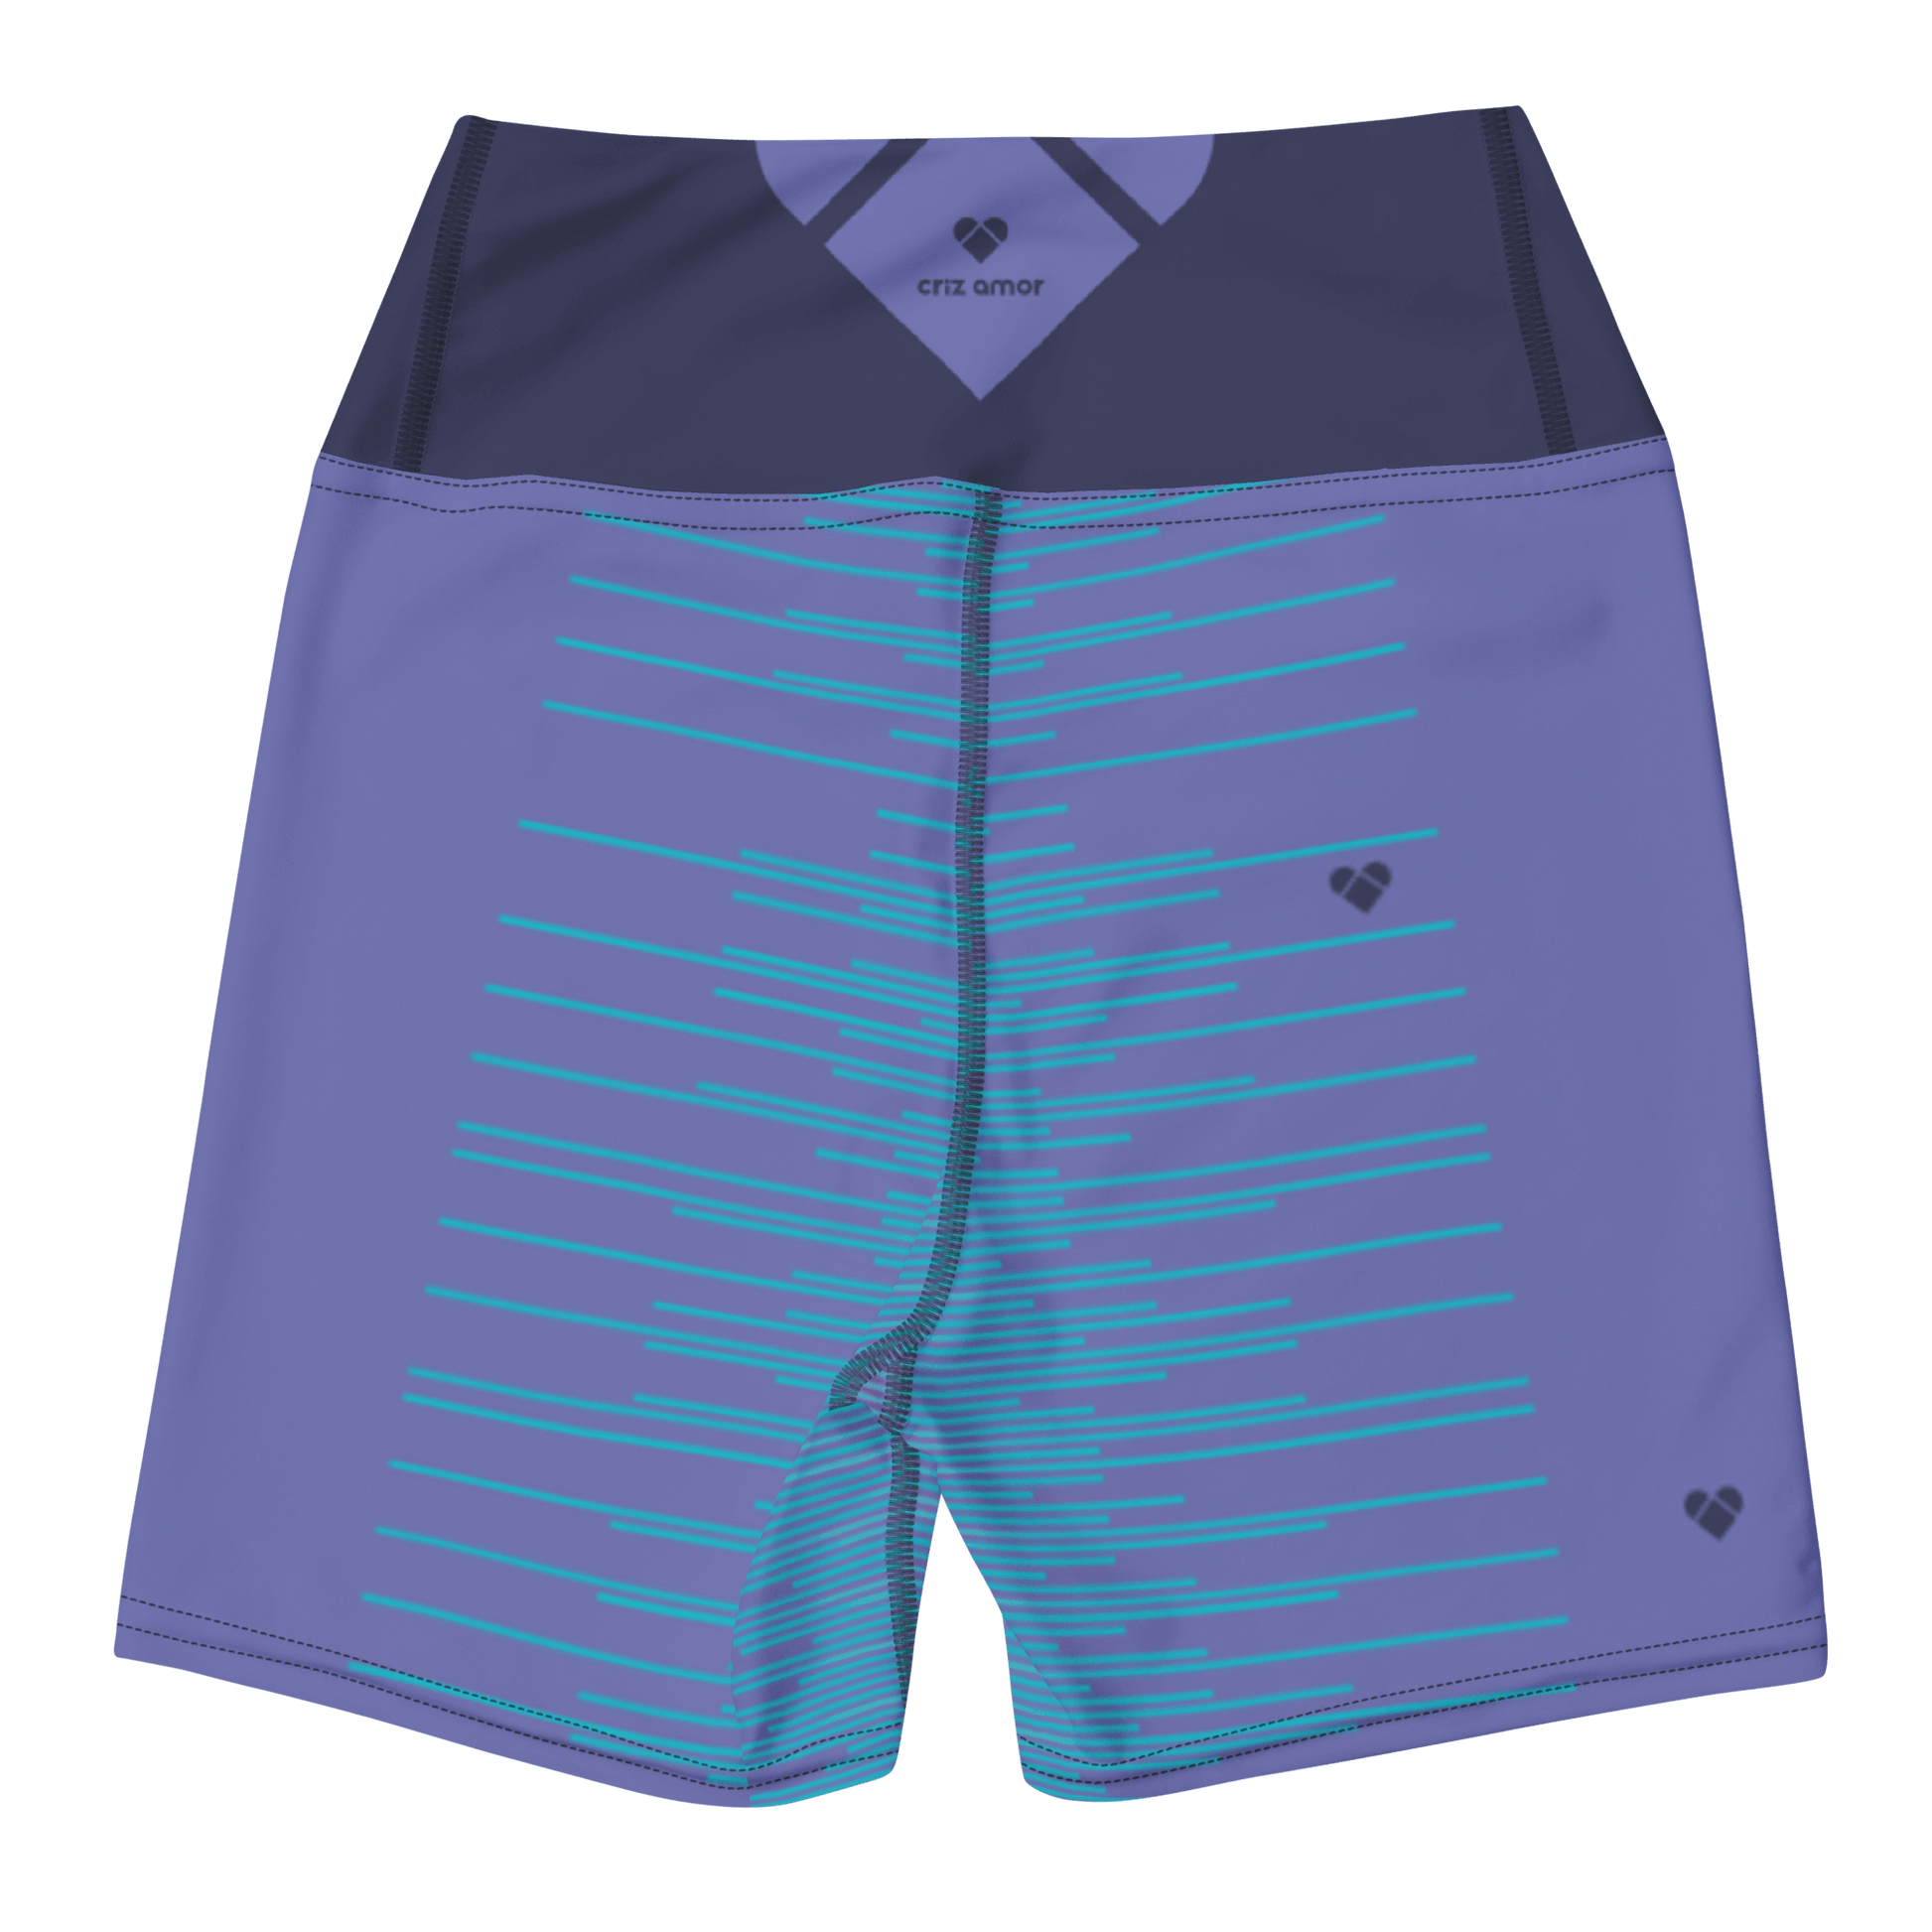 Empowering Periwinkle Dual Yoga Shorts - CRiZ AMOR